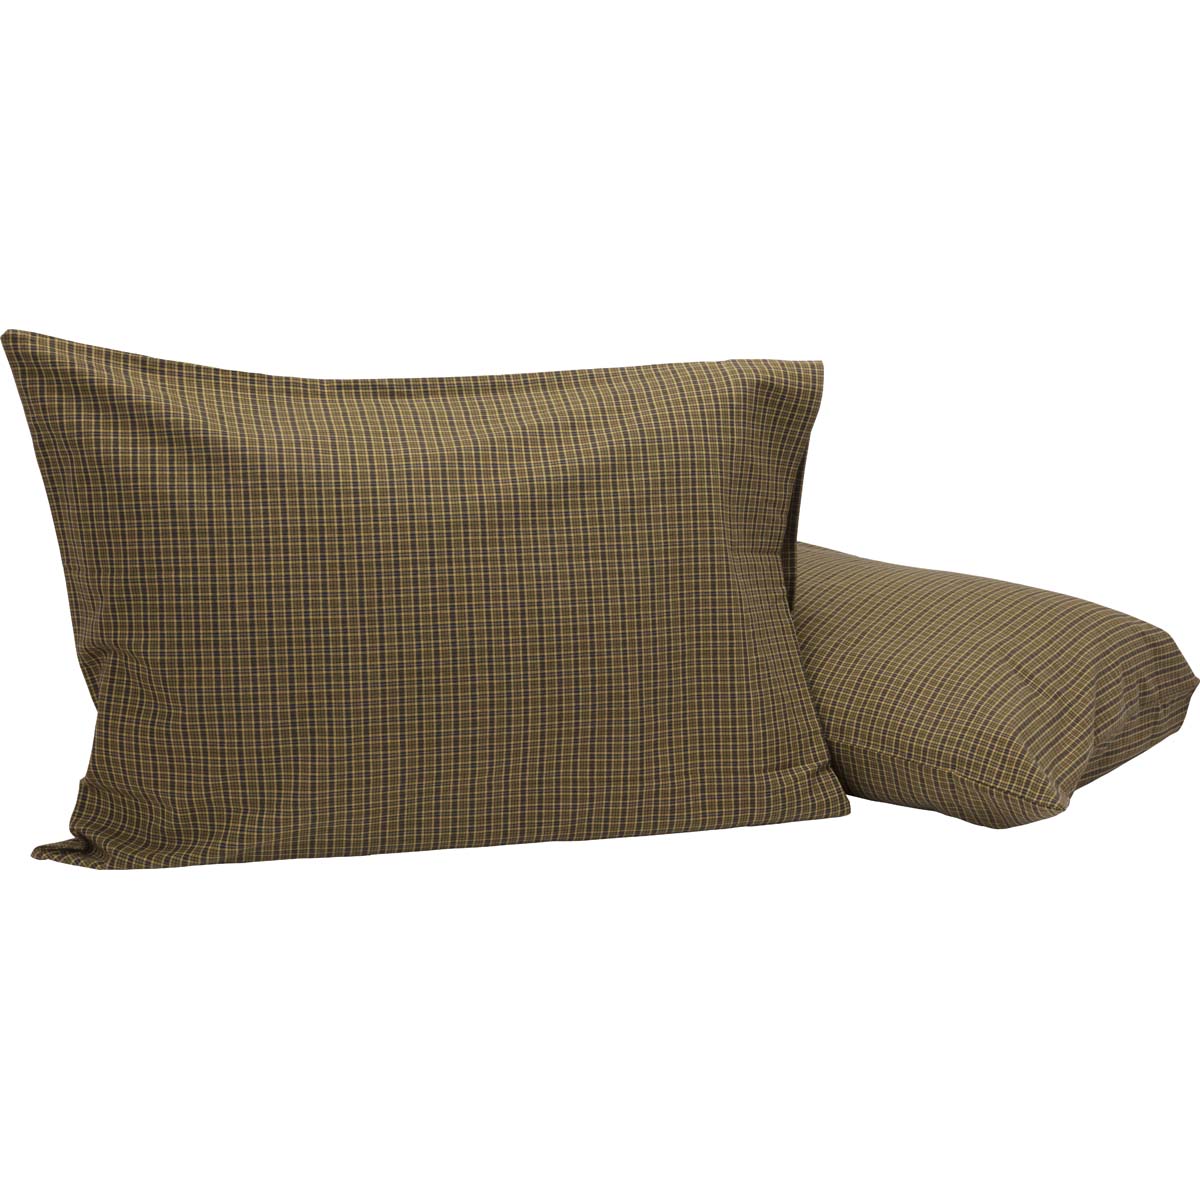 Tea Cabin Green Plaid Standard Pillow Case Set of 2 21x30